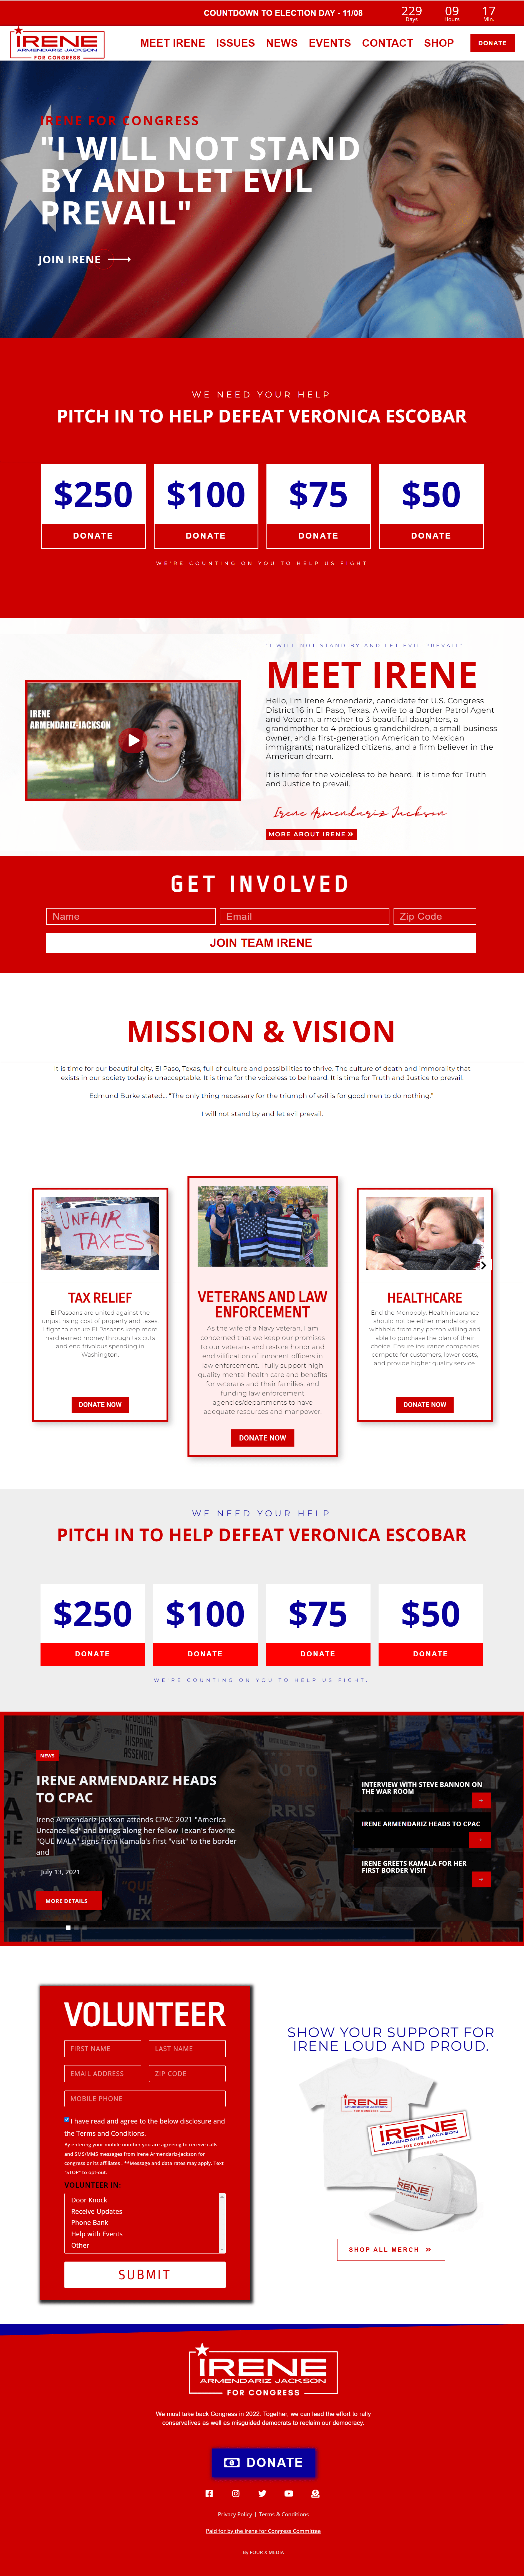 Republican candidate website design